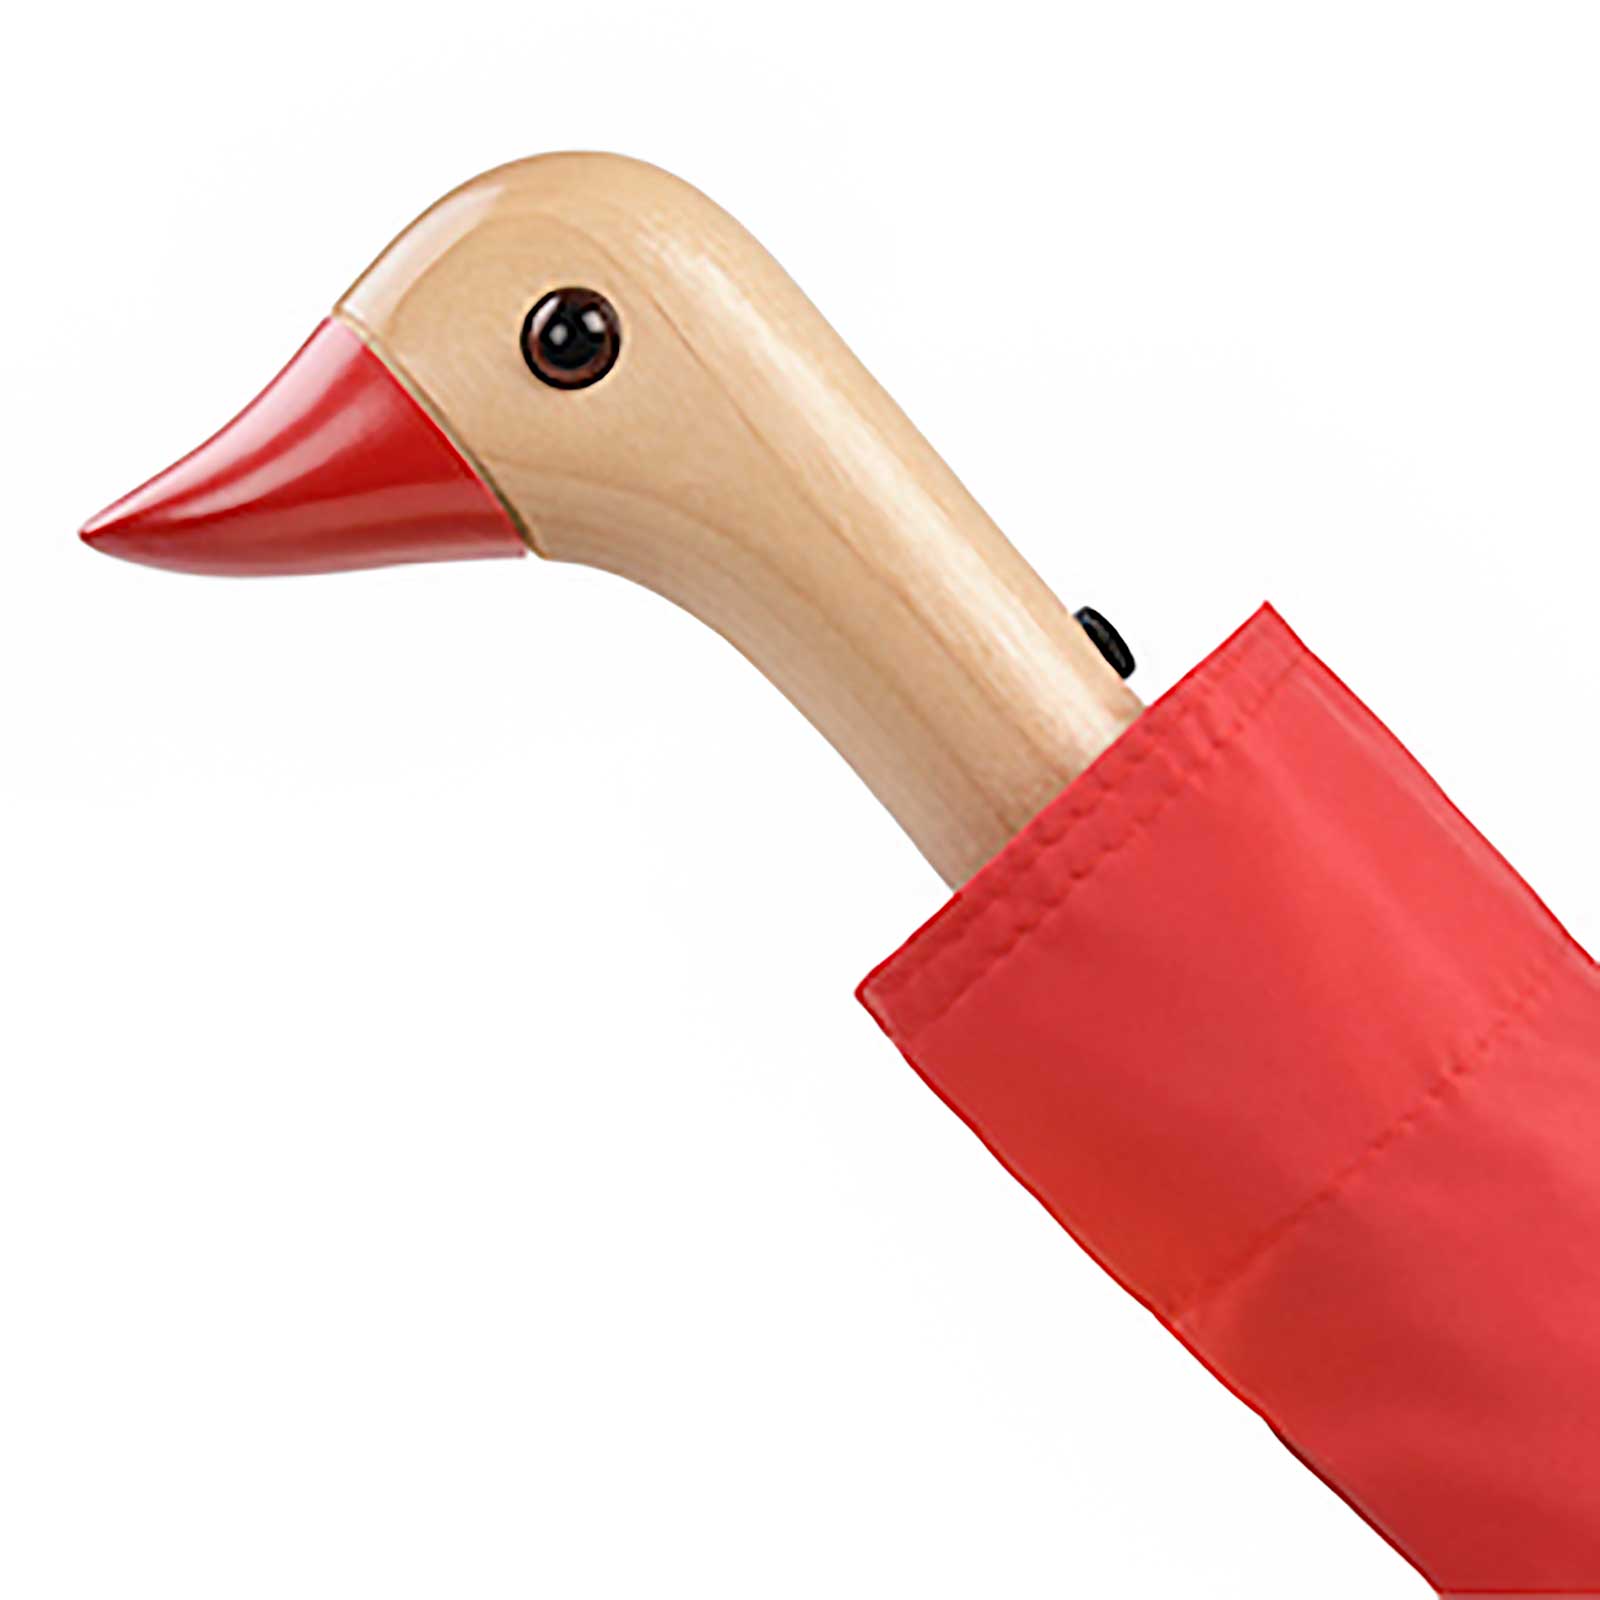 The Original Duckhead Folding Umbrella - Red